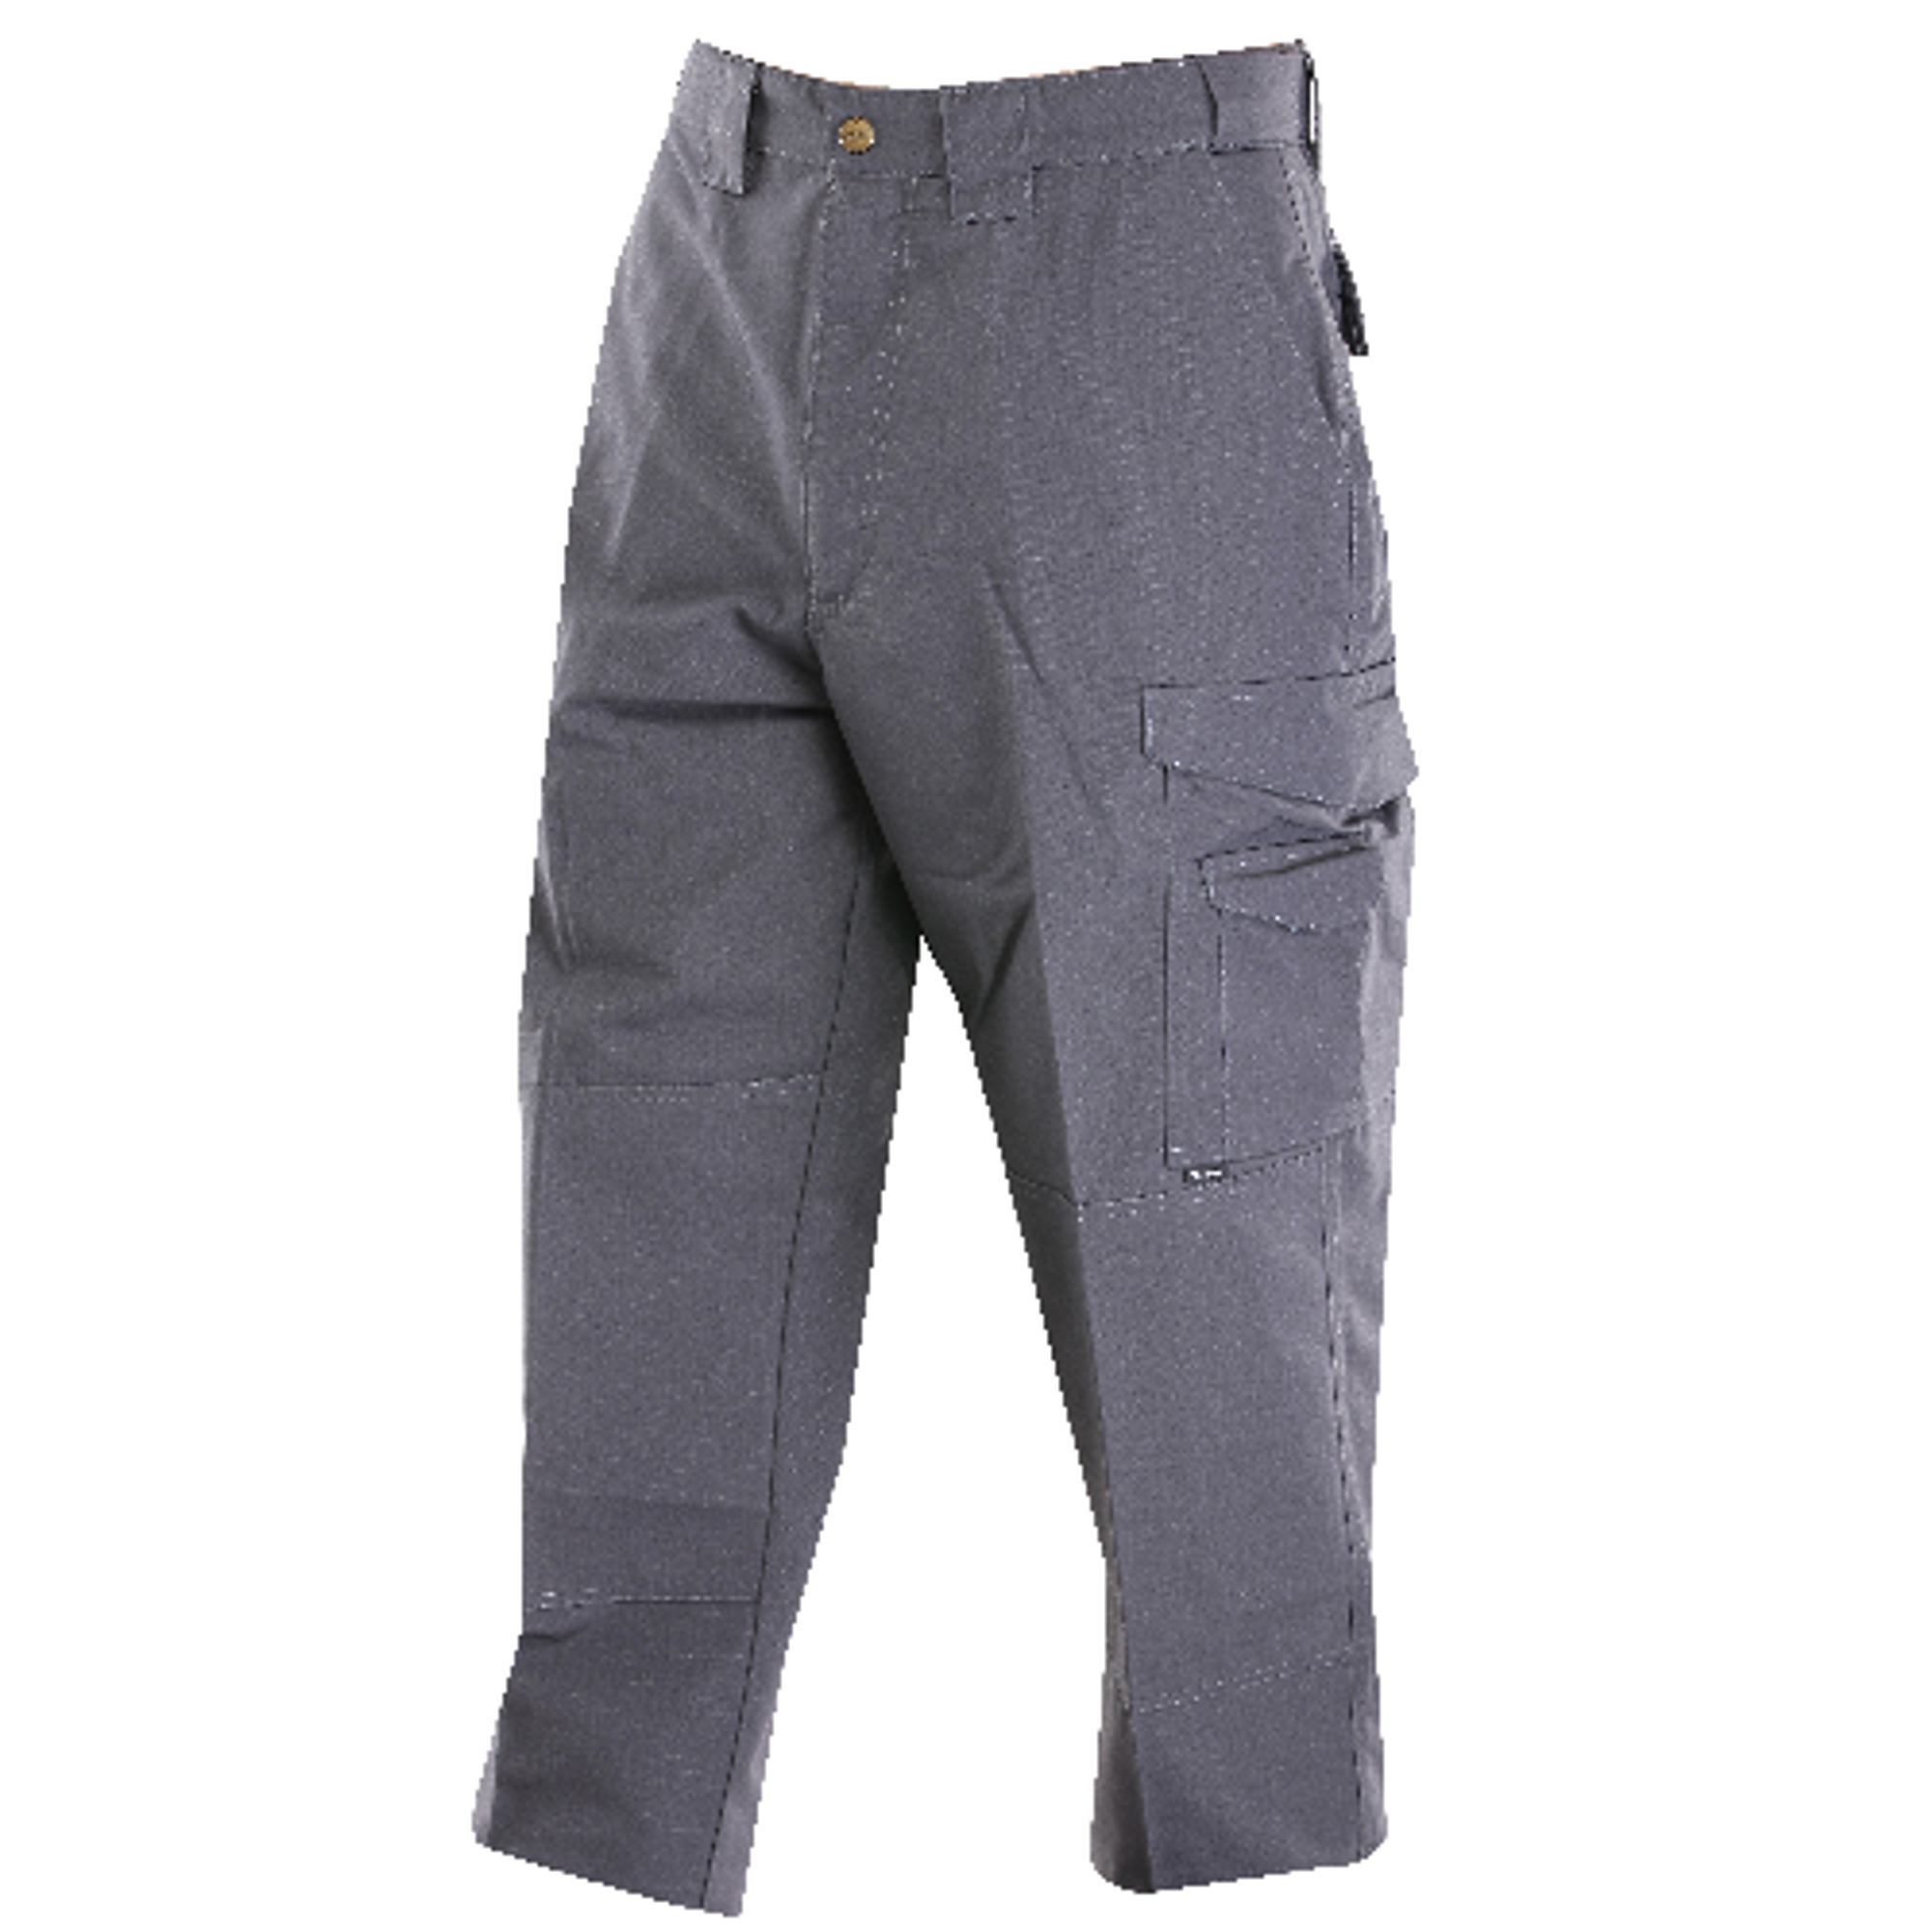 24-7 Original Tactical Pants - 6.5oz - Charcoal - KRTSP-1079047